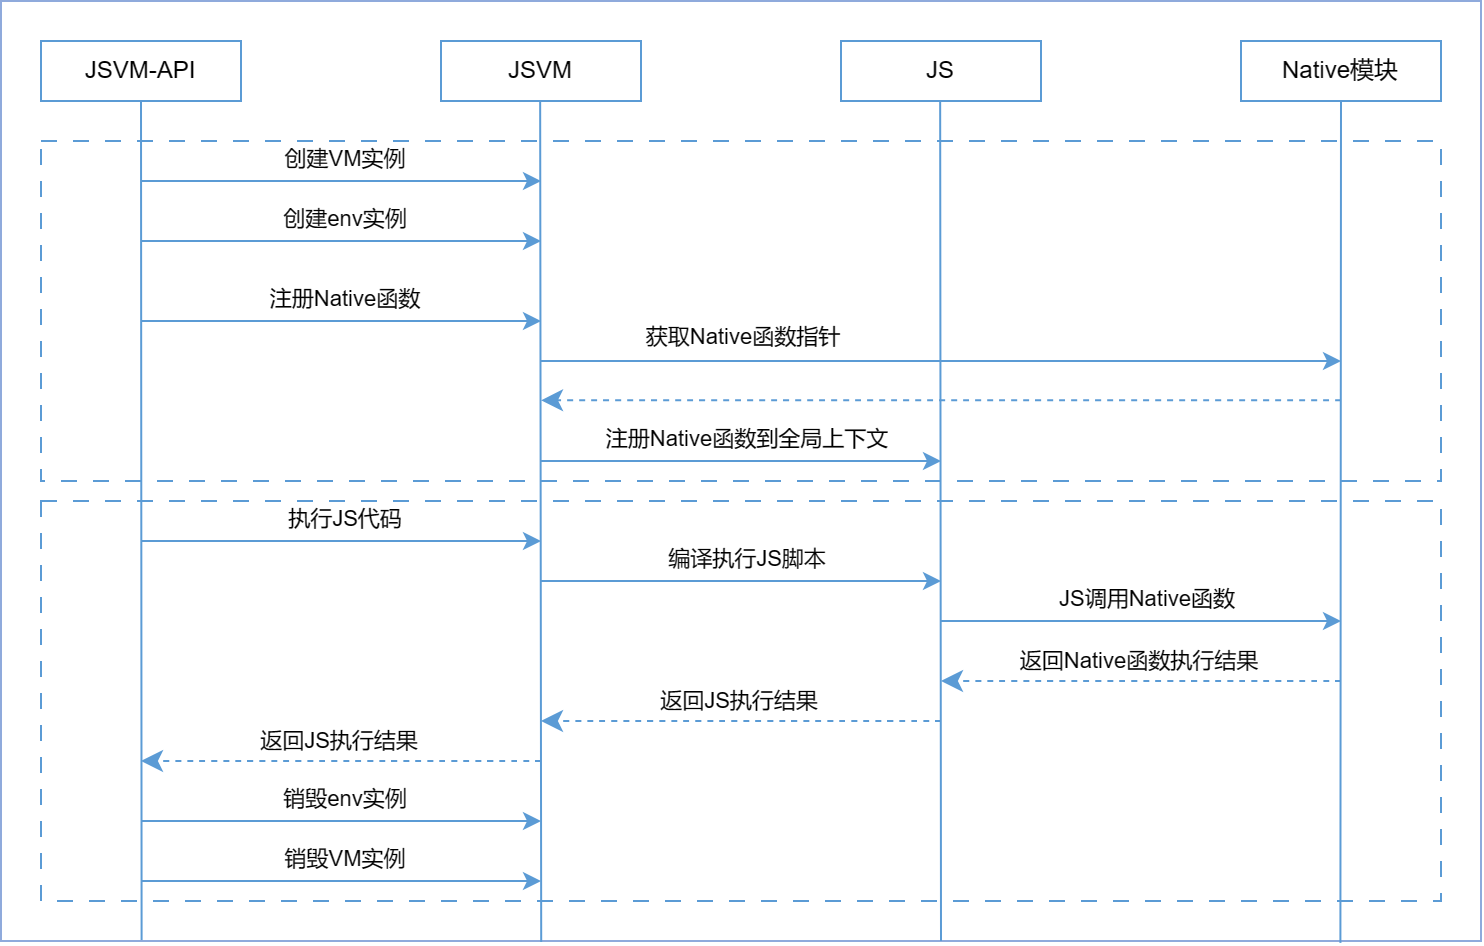 JSVM-API 关键交互流程